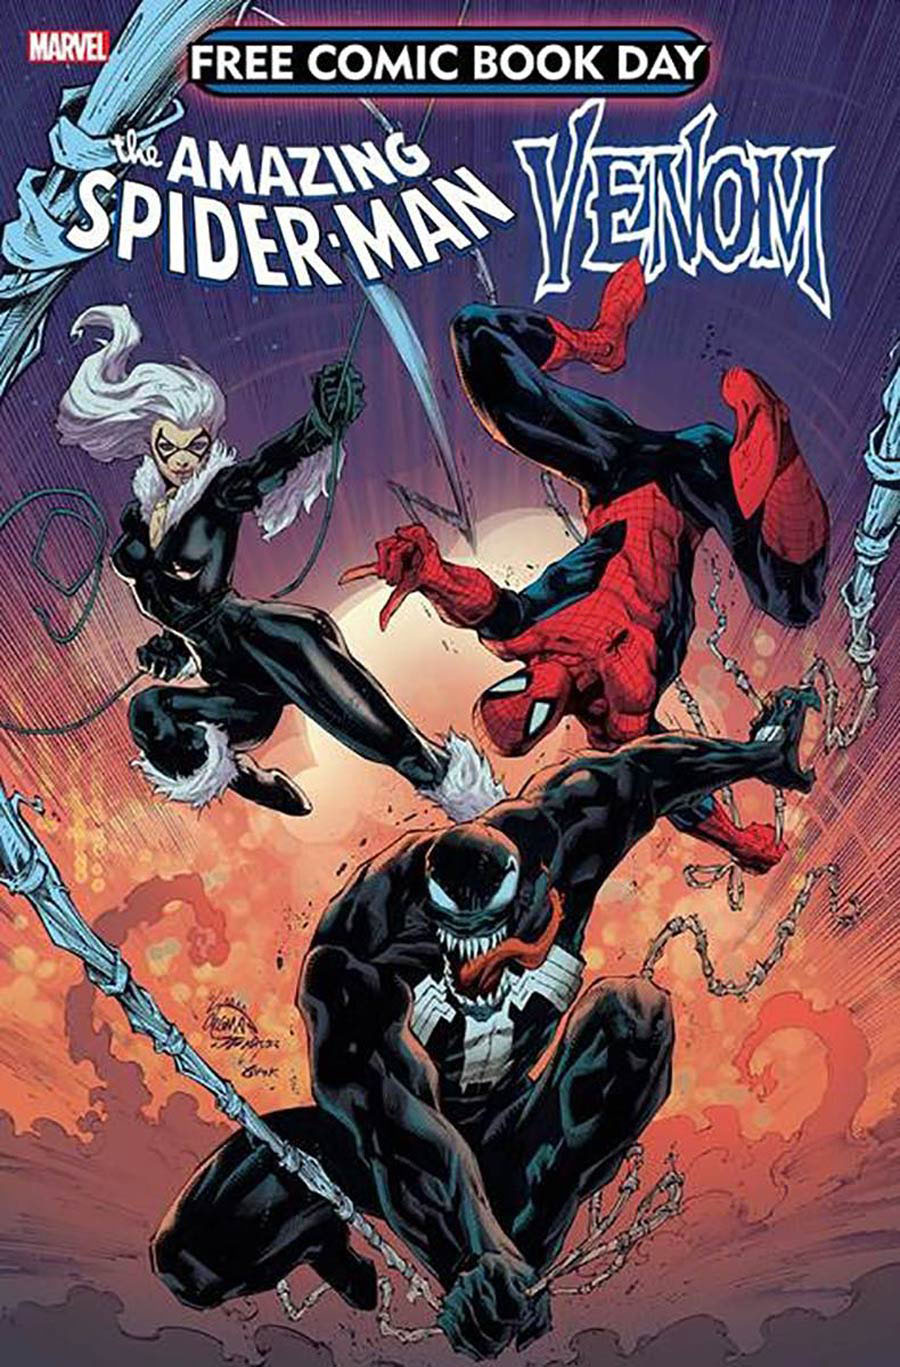 Spider-Man Venom #1 FCBD 2020 Regular Version